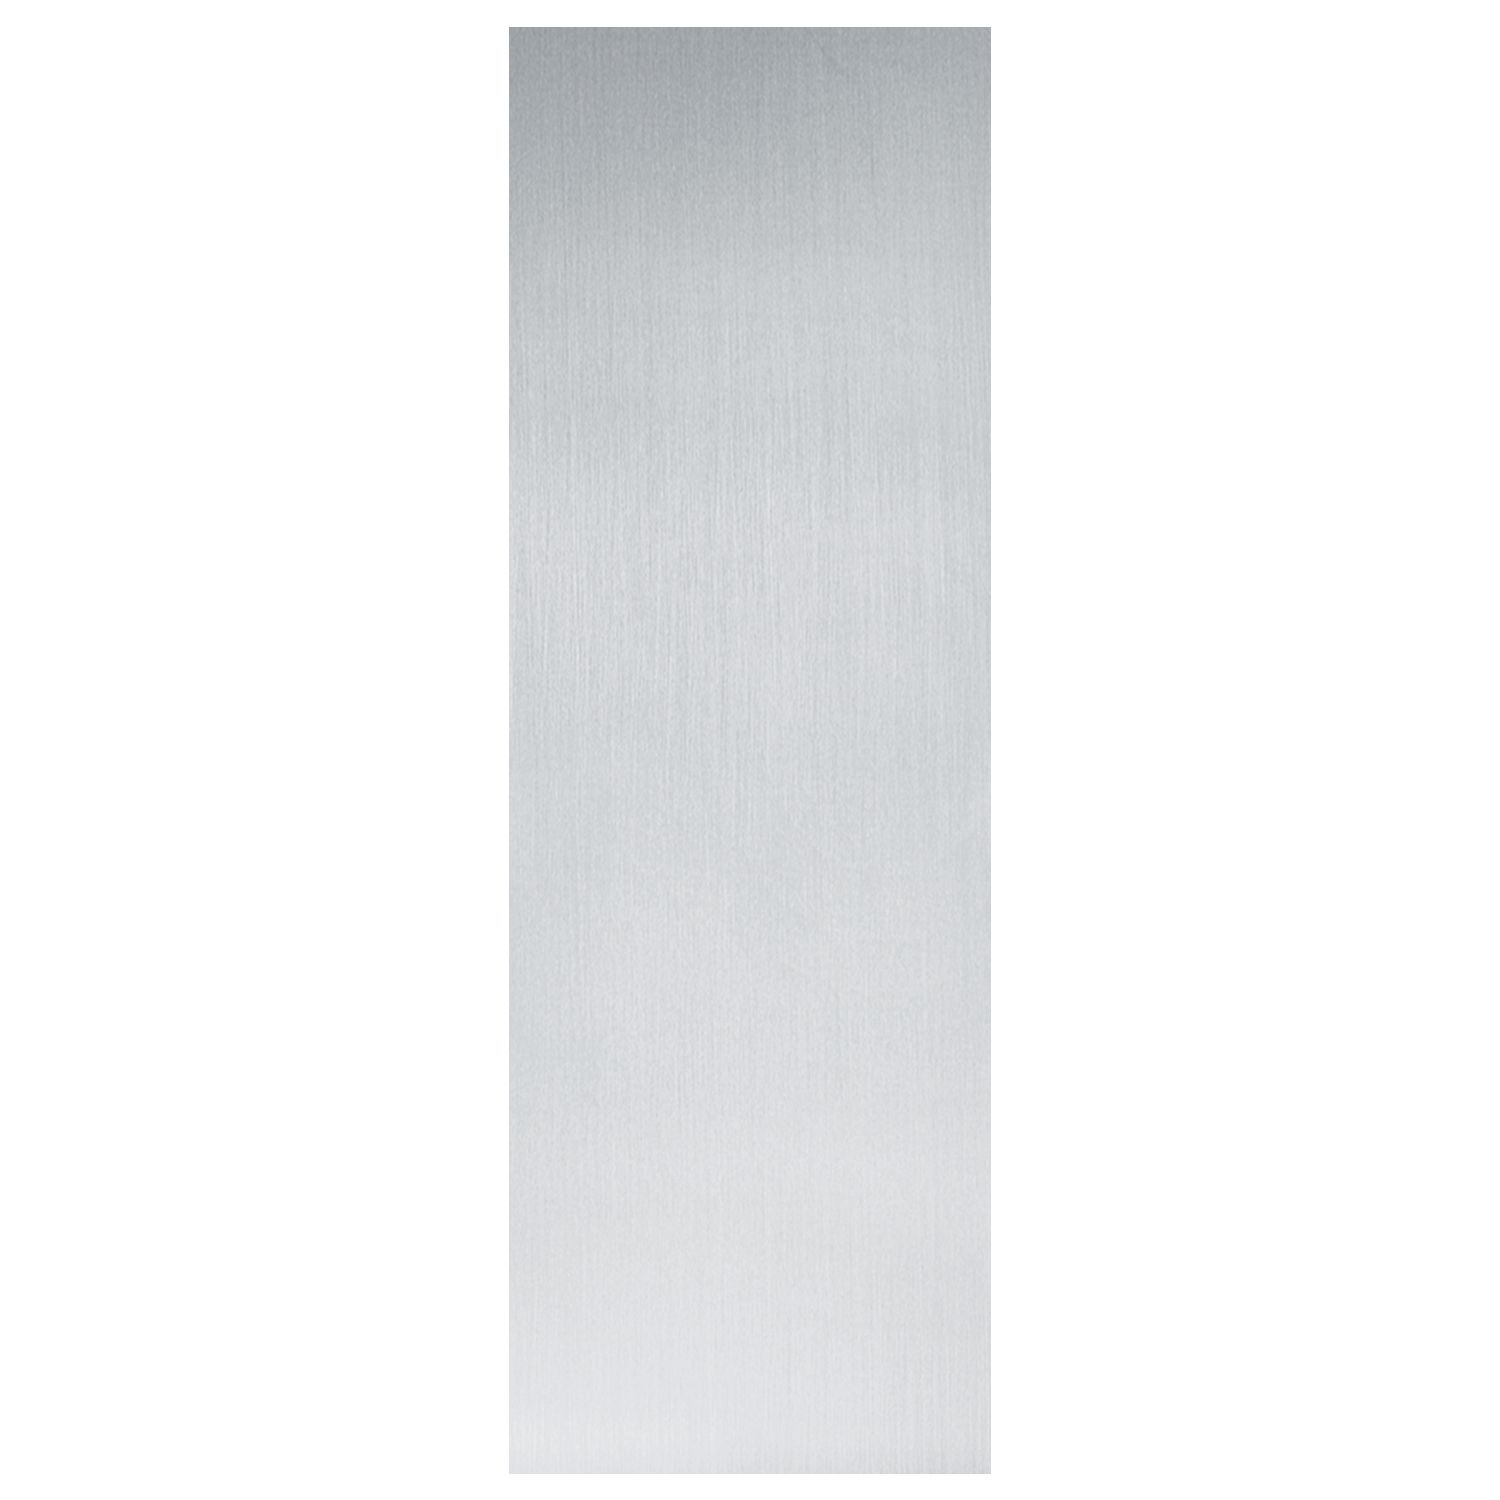 Mauerkantenprofil Edelstahl, selbstklebend, 40x40x1,2 mm, 1500 mm